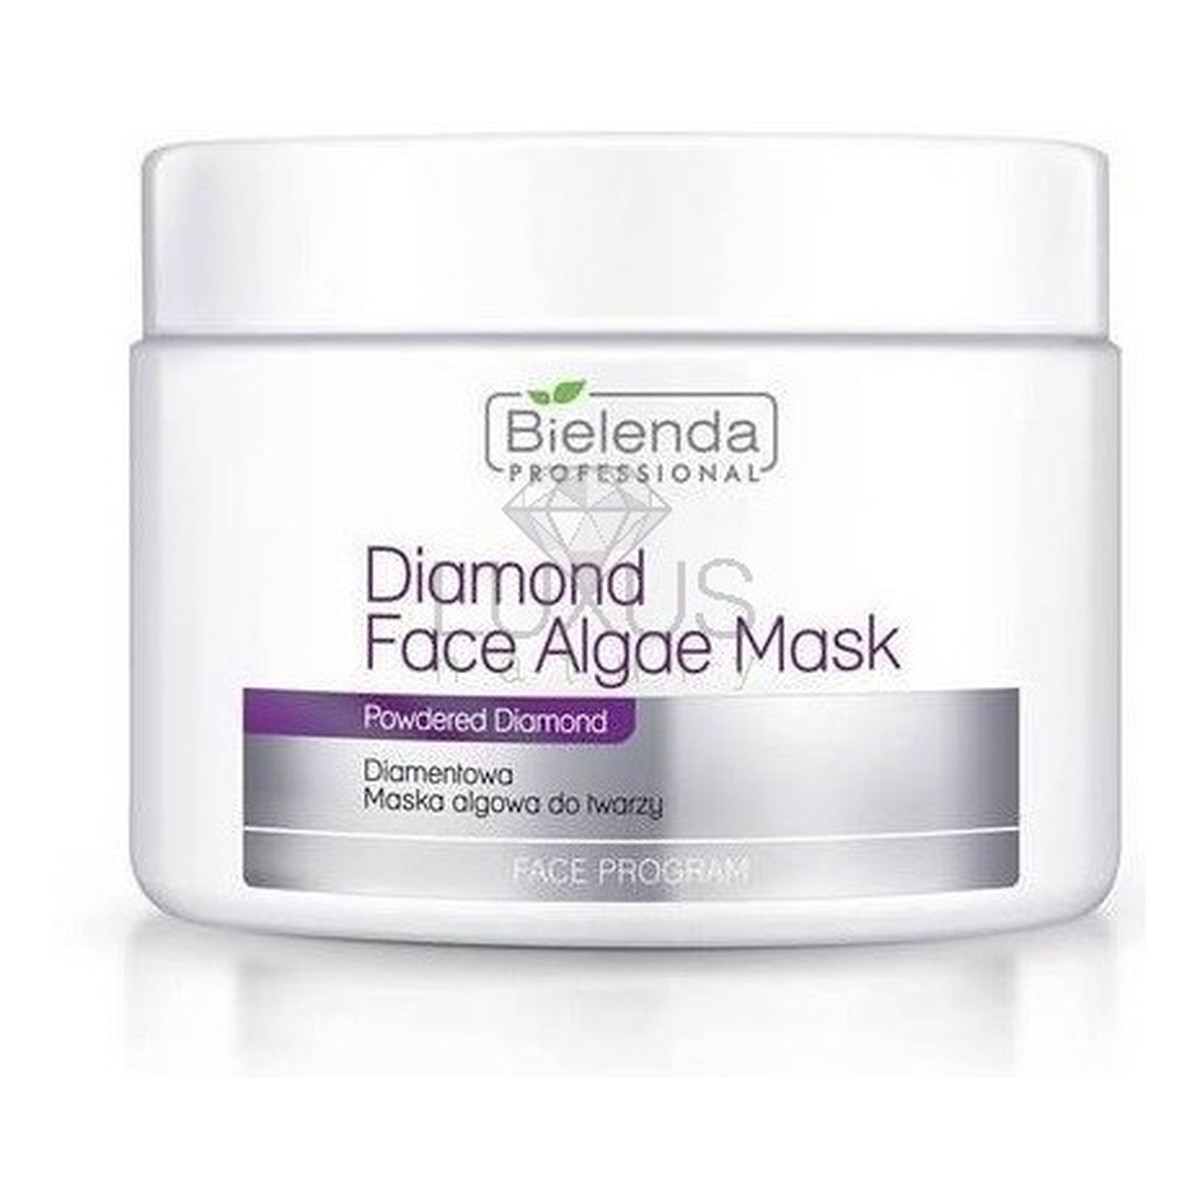 Bielenda Professional Diamond Face Algae Mask Maska Algowa Diamentowa Cera Dojrzała Utrata Elastyczności i Jędrności 190g